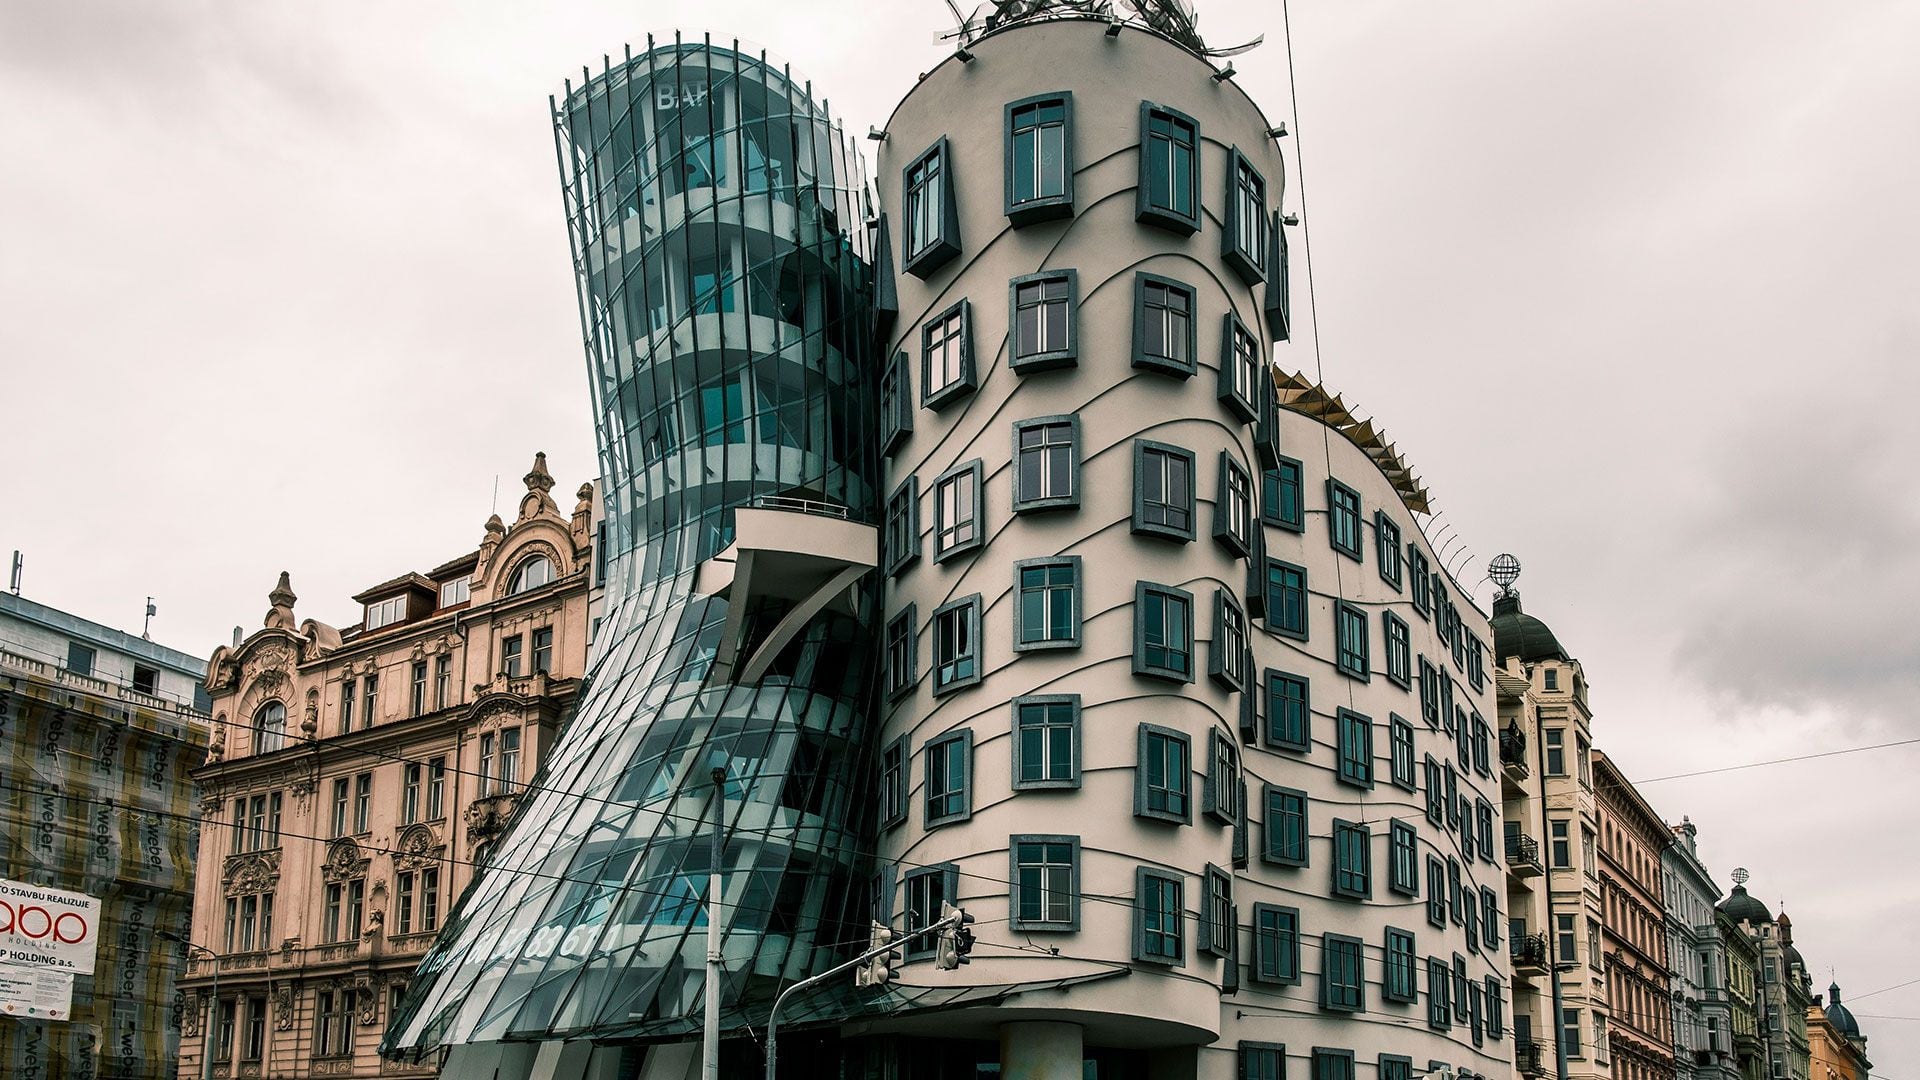 Construcciones raras de Polonia y Republica Checa